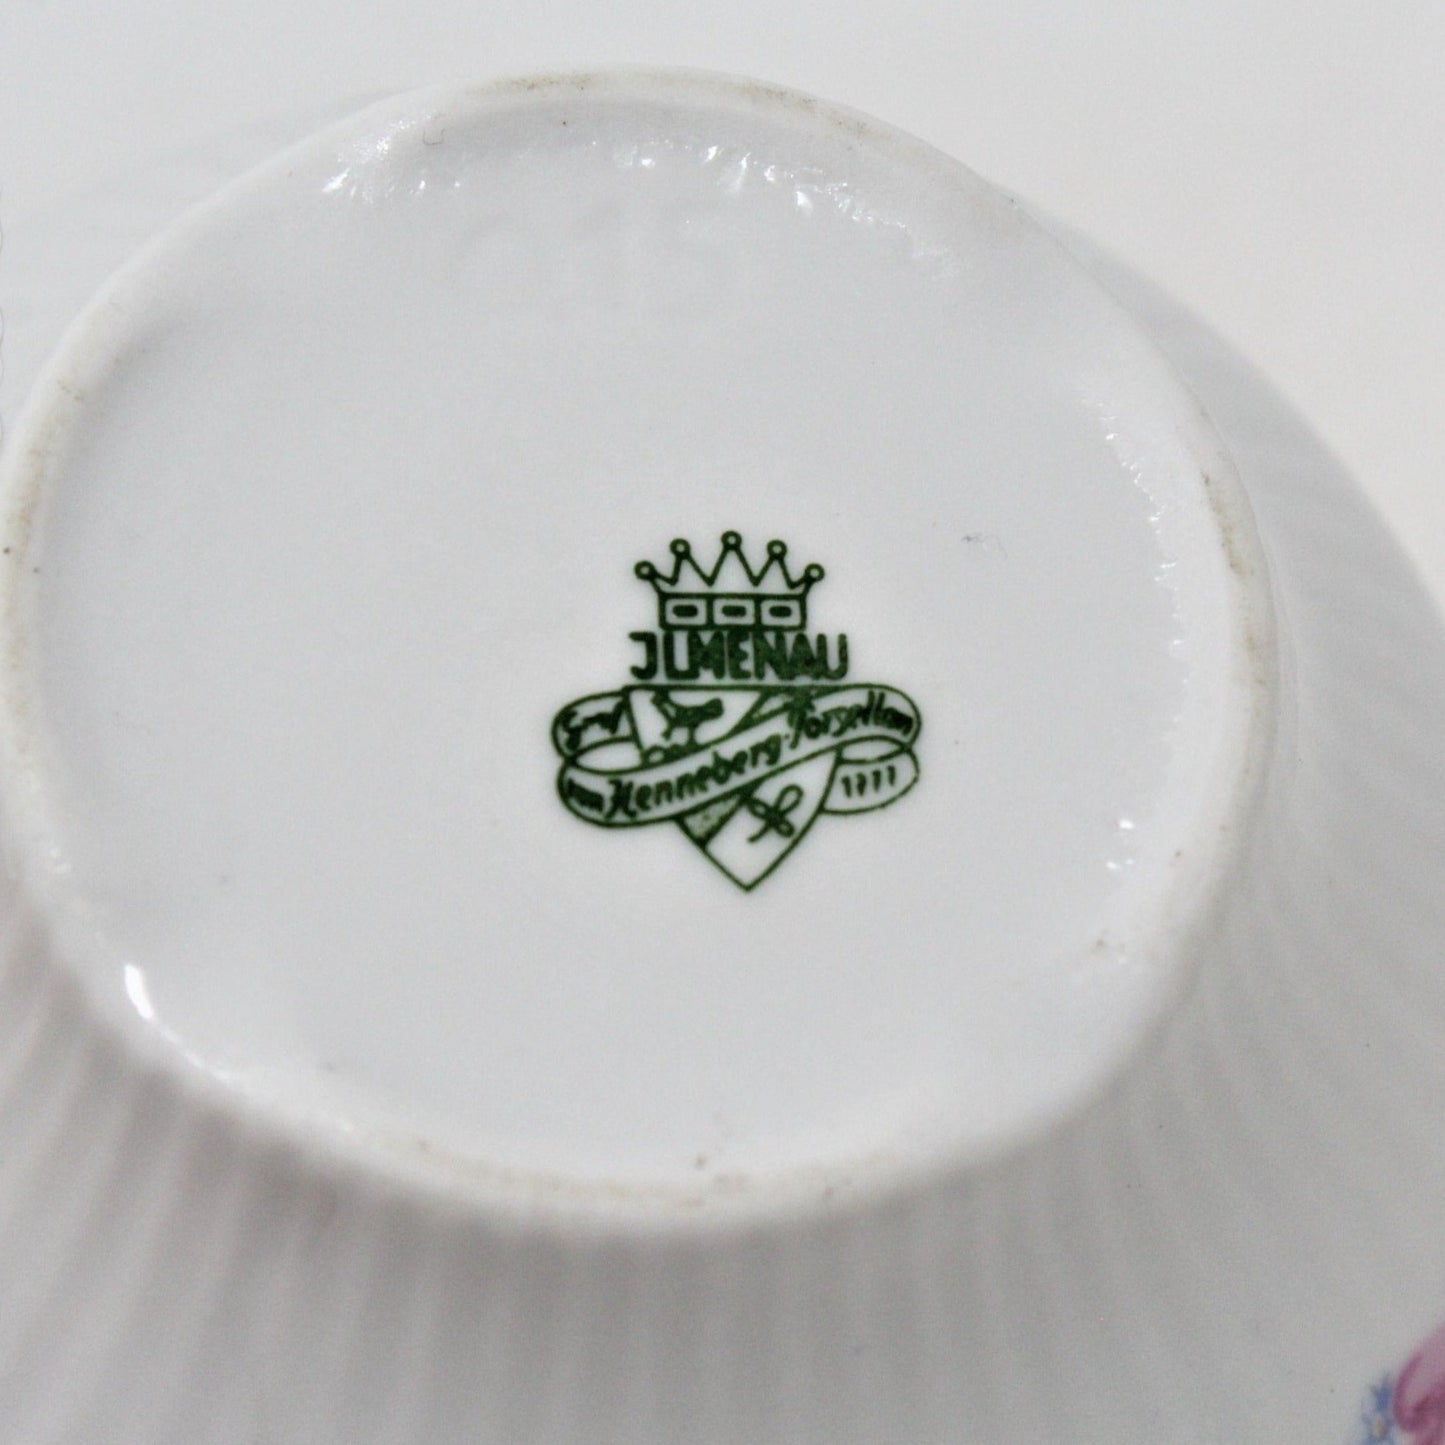 Sugar Bowl with Lid, JLMenau Graf Von Henneberg, Floral, Vintage